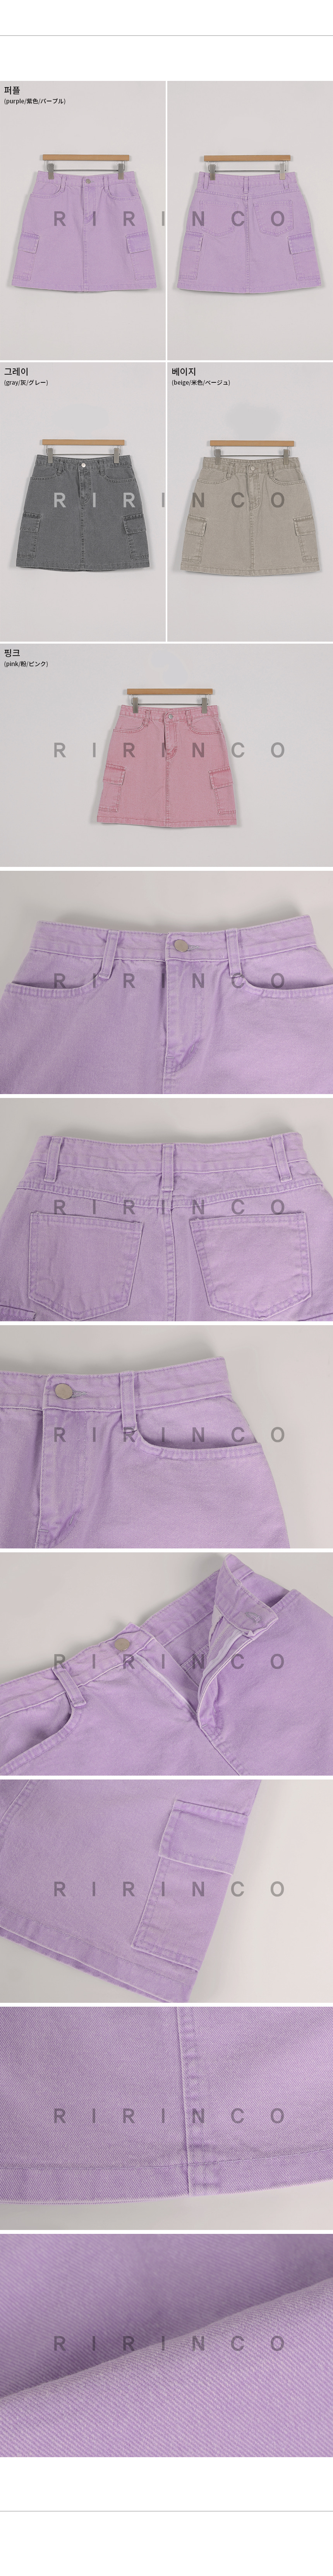 RIRINCO カーゴポケットミニスカート